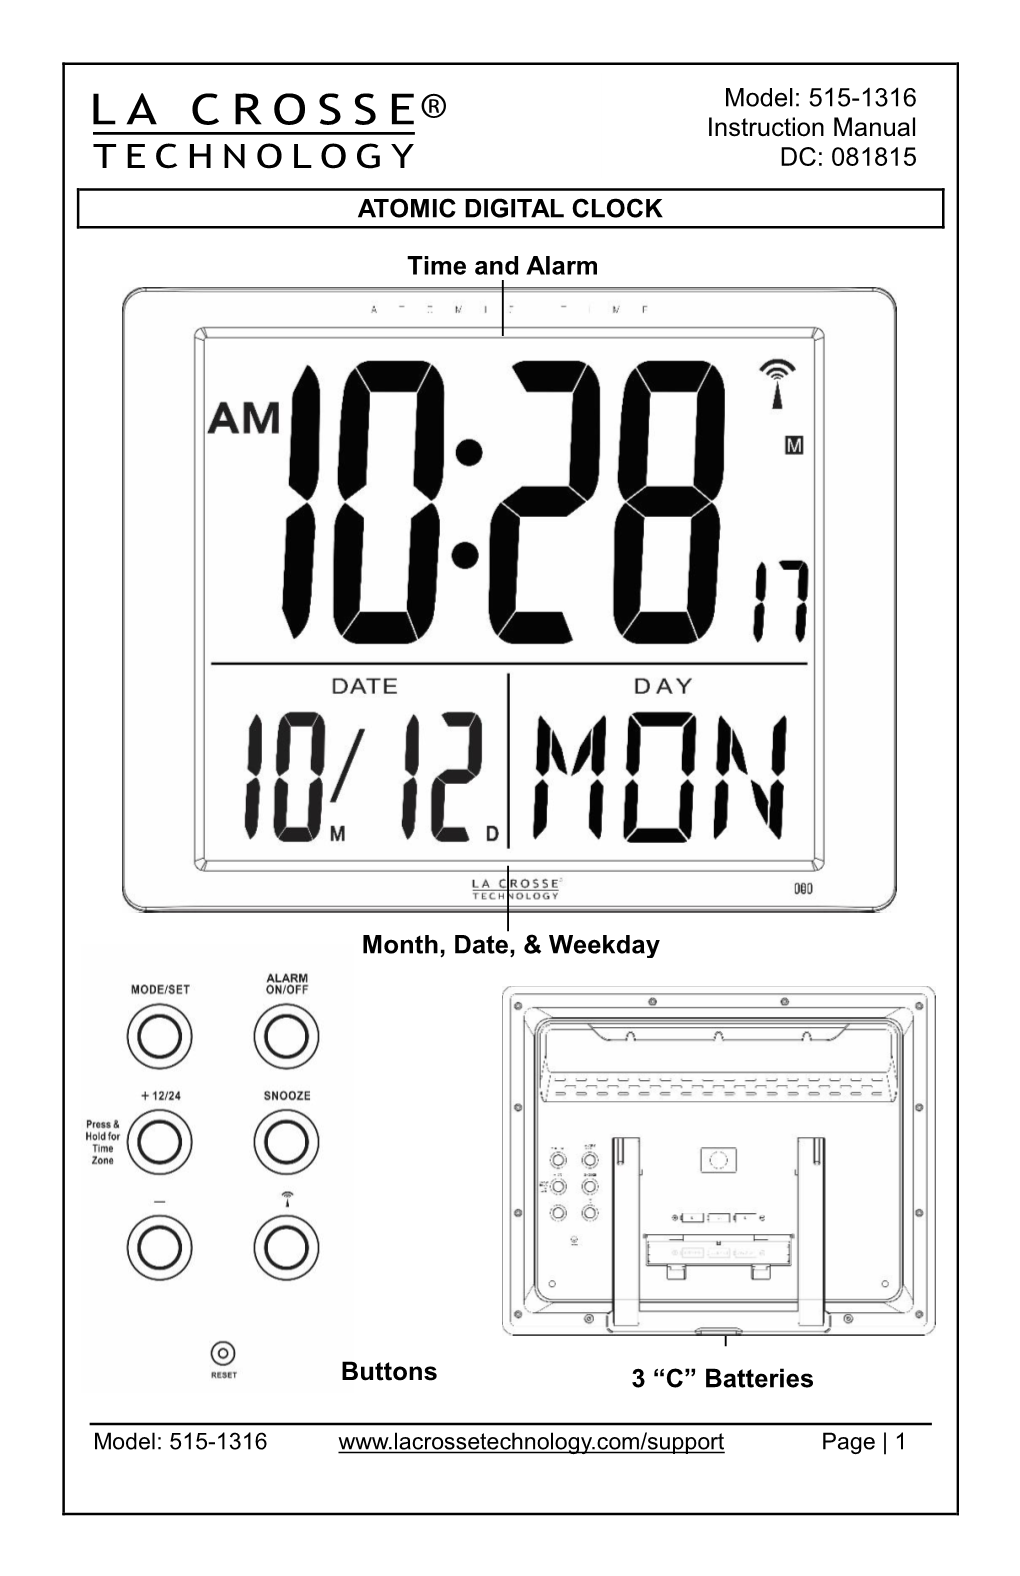 ATOMIC DIGITAL CLOCK Model: 515-1316